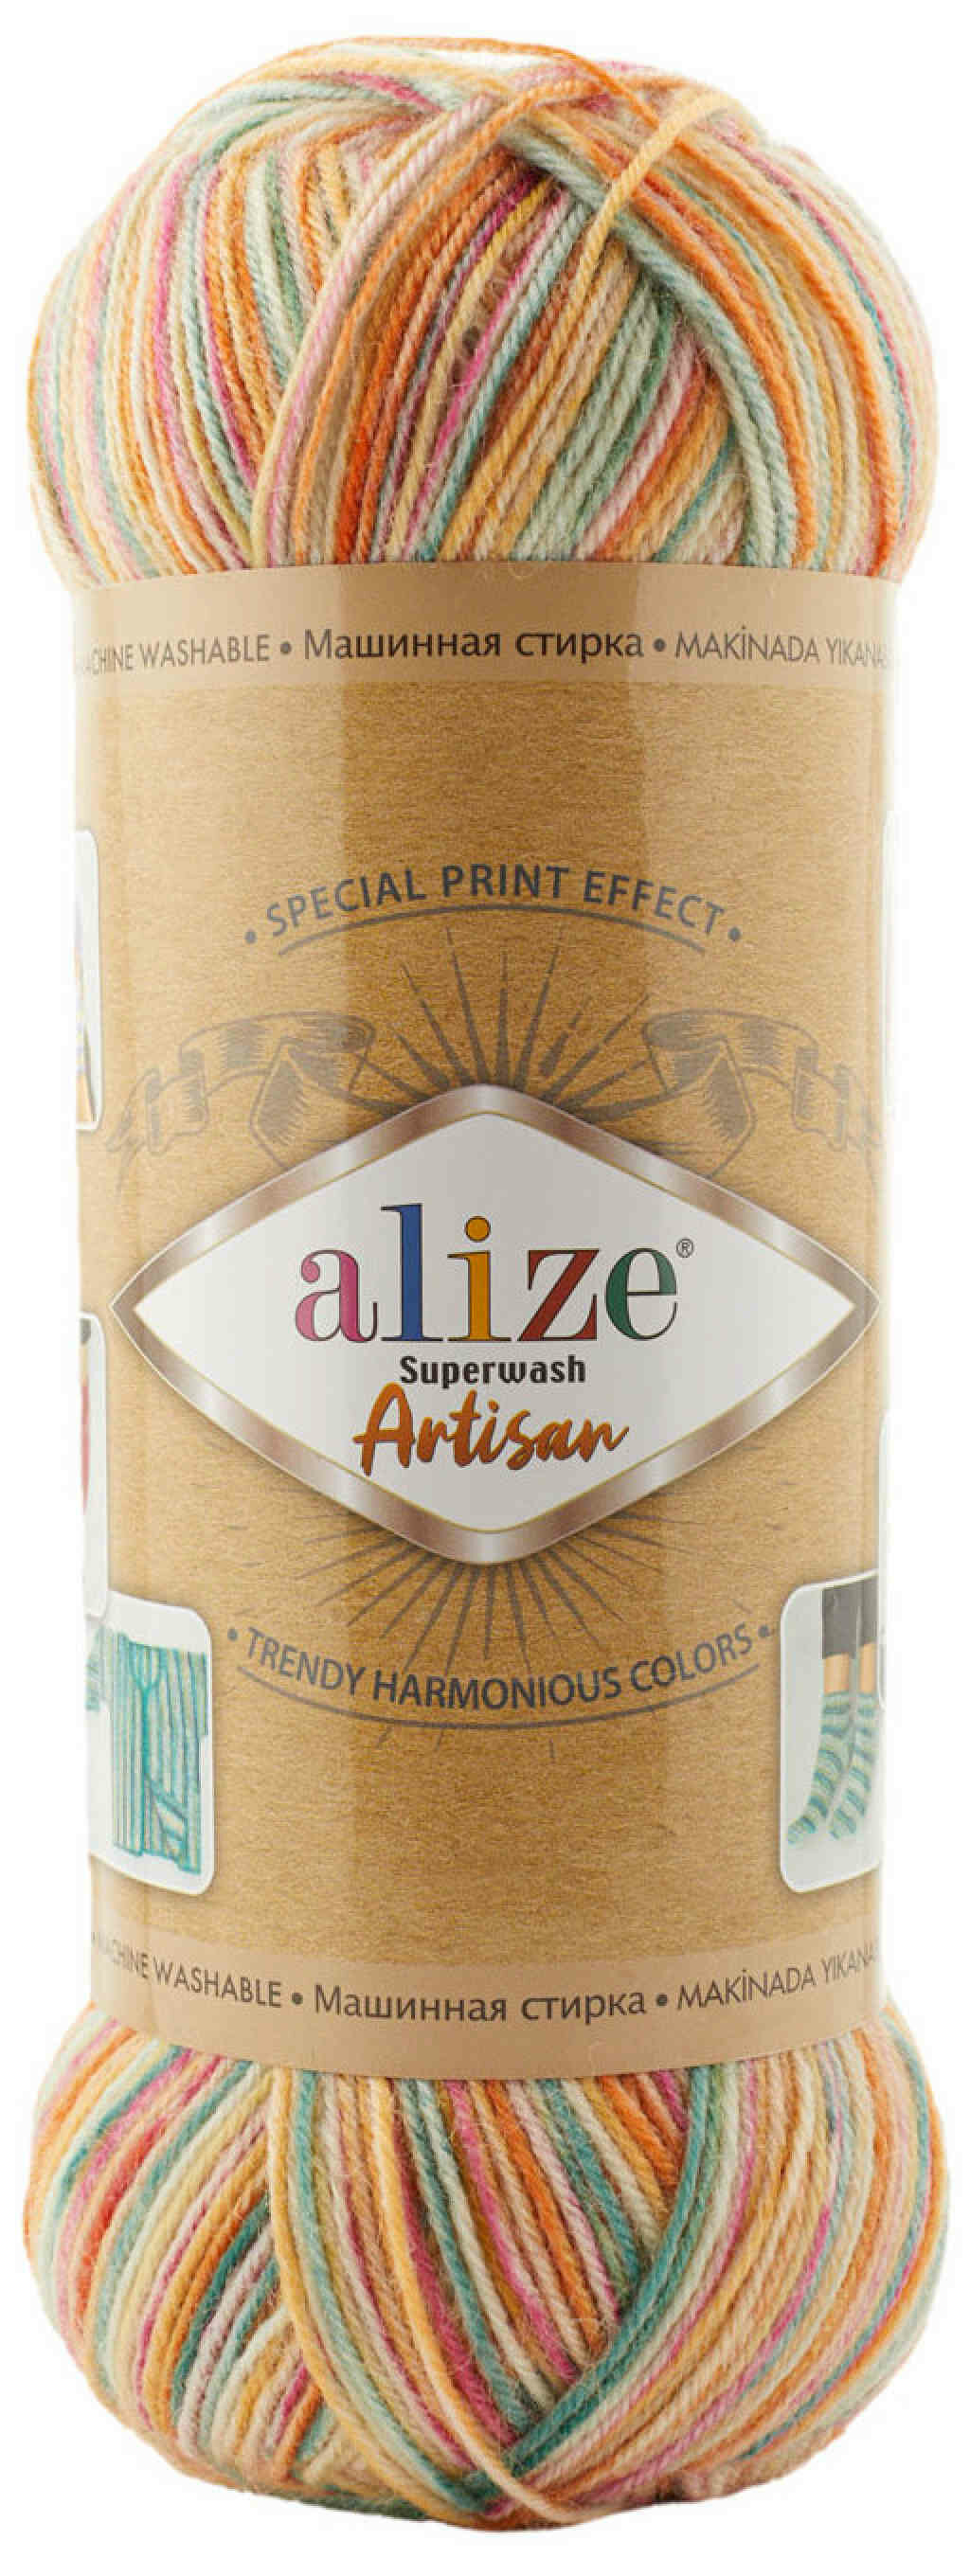 Пряжа Alize Superwash Artisan принт оранжевый-розовый-бирюзовый (9012), 75%шерсть/25%полиамид, 420м, 100г, 2шт